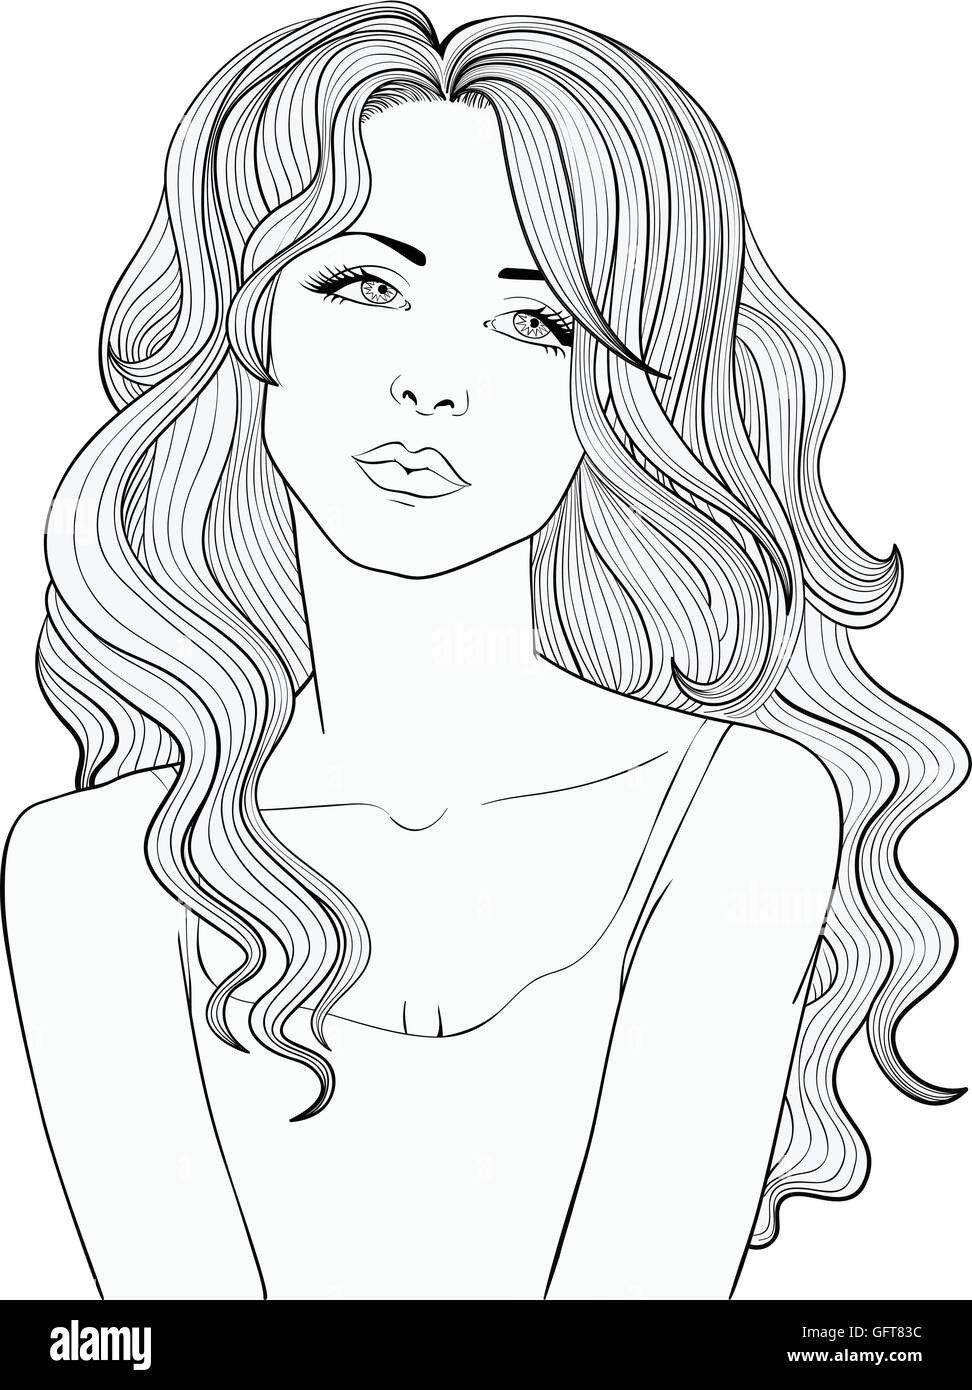 Dessin vectoriel en ligne d'une jolie fille avec de longs cheveux ondulés. Illustration de Vecteur